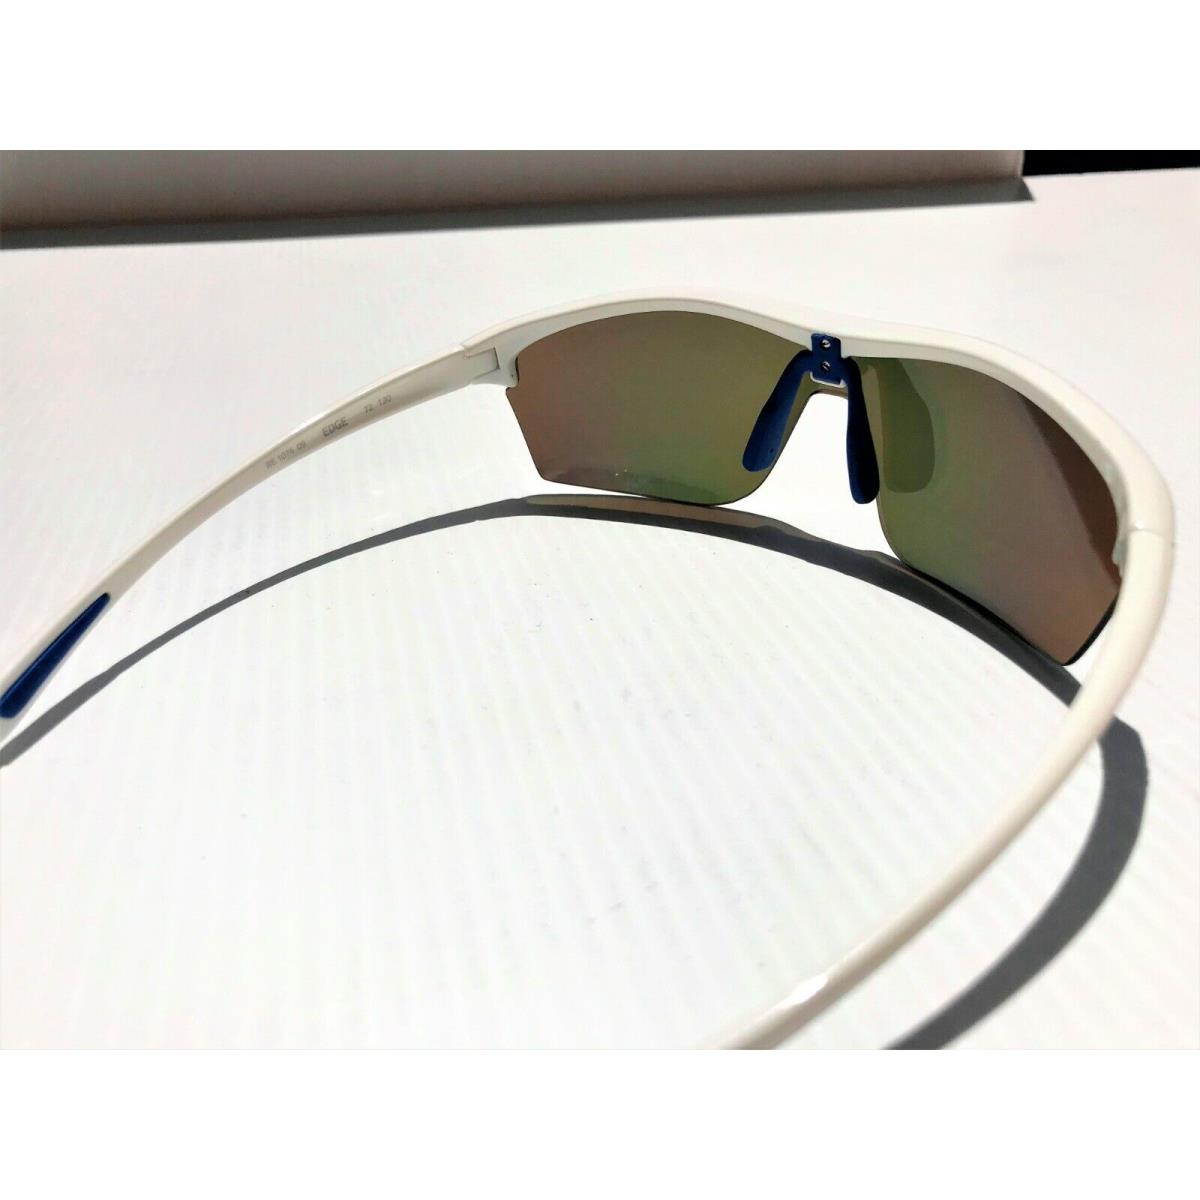 Revo sunglasses Edge River Jetty - White Frame, Orange Lens